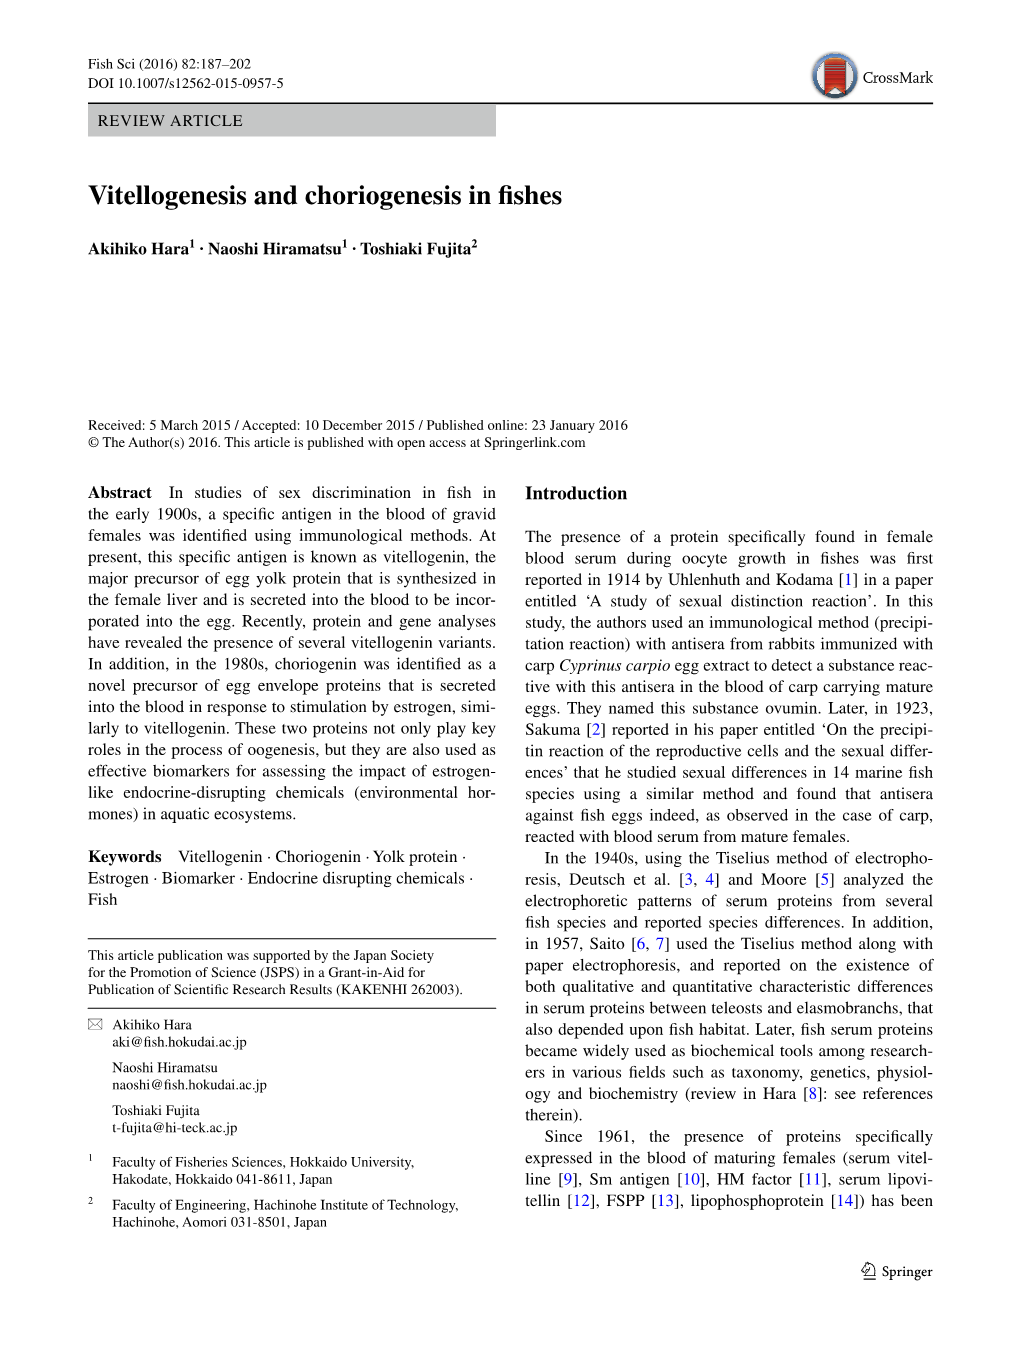 Vitellogenesis and Choriogenesis in Fishes